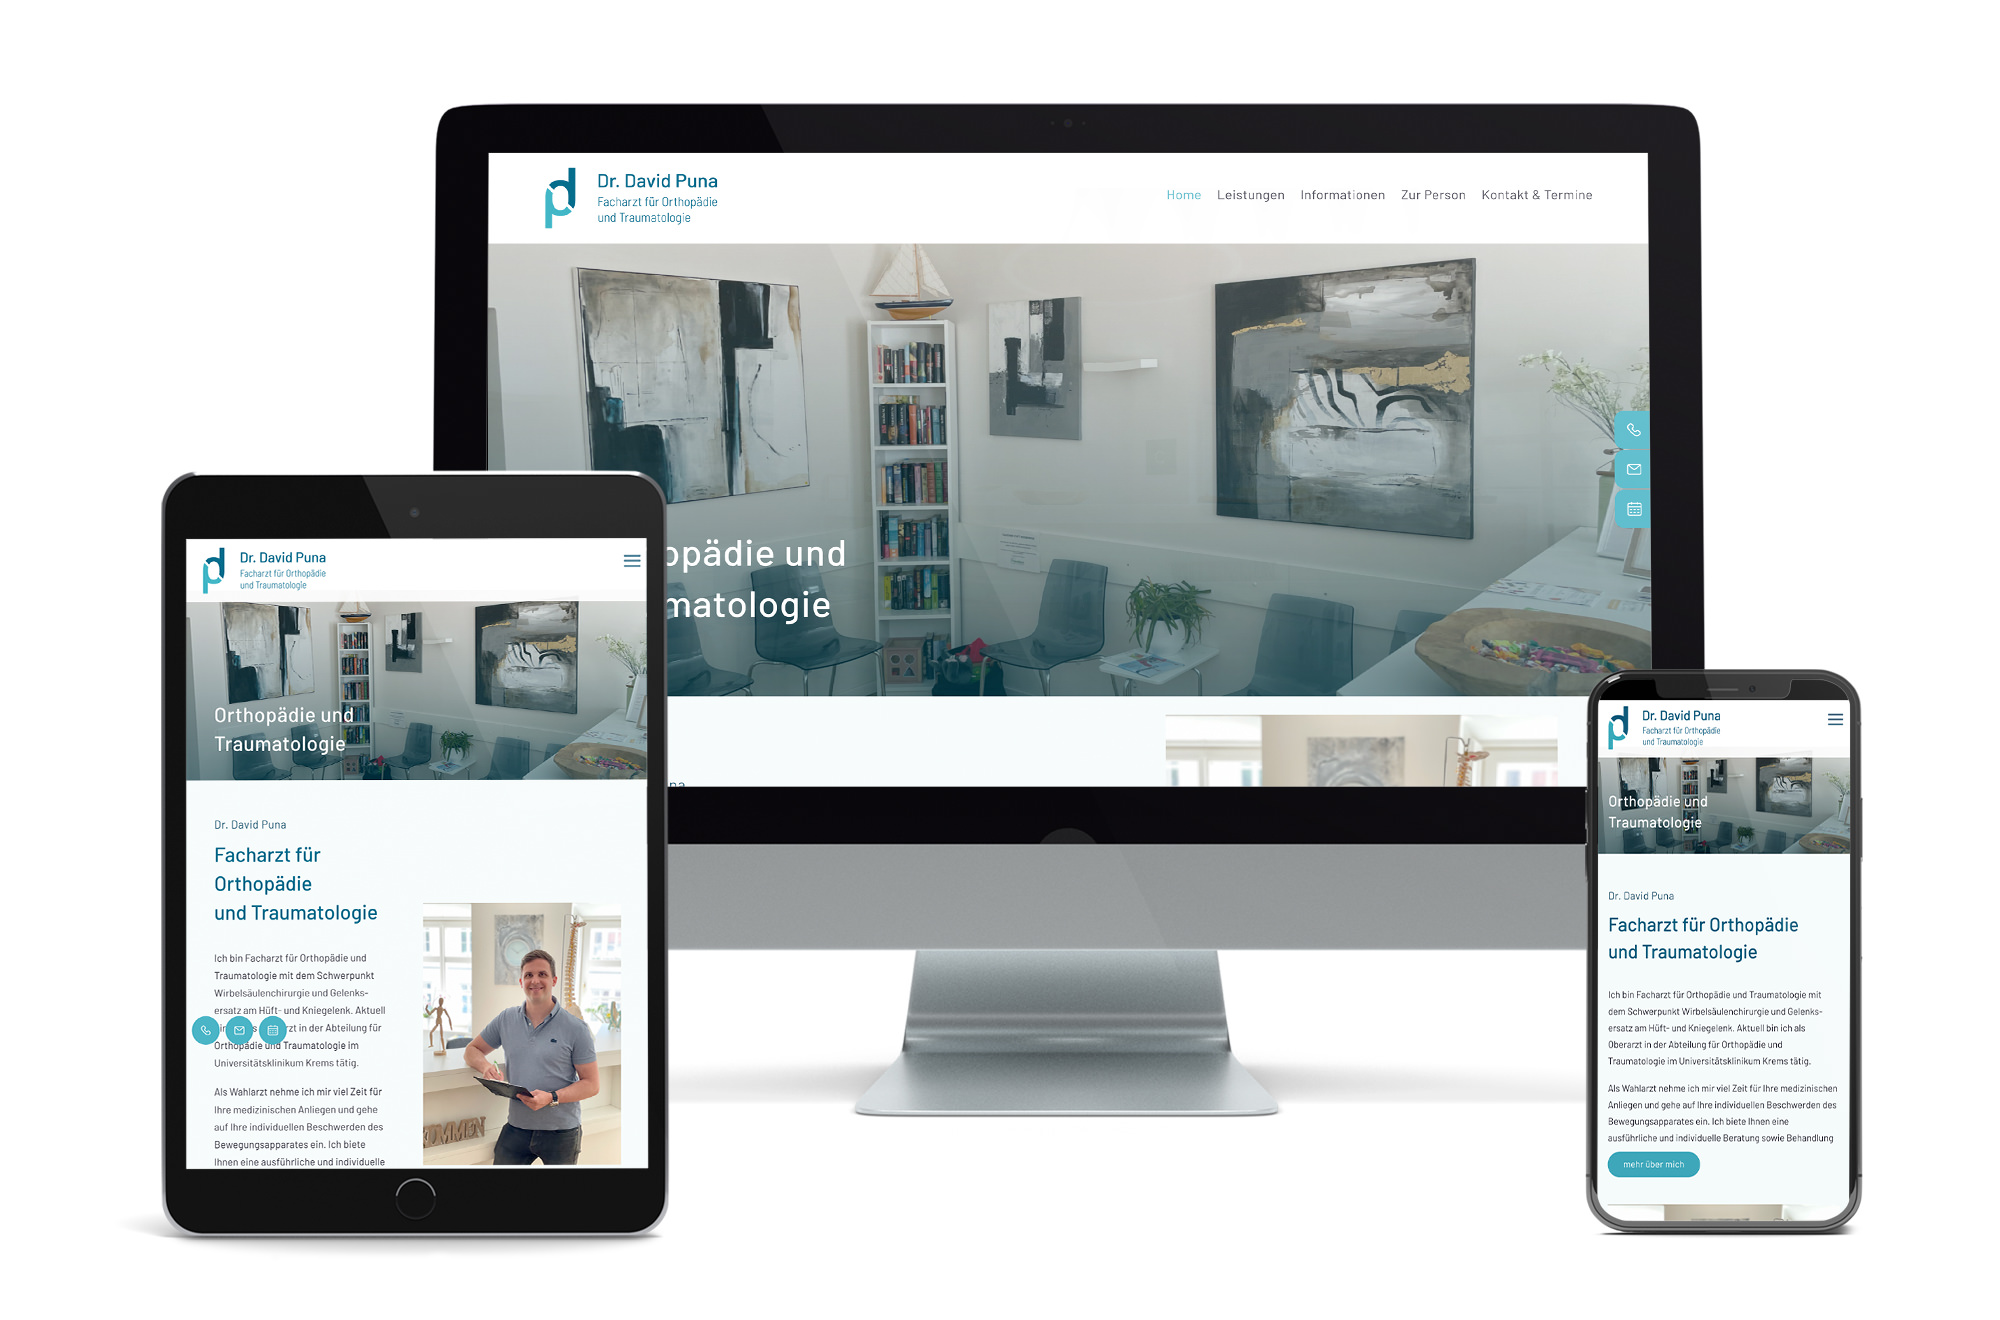 Webdesign Beispiel: Neue Website für Facharzt / Wahlarzt